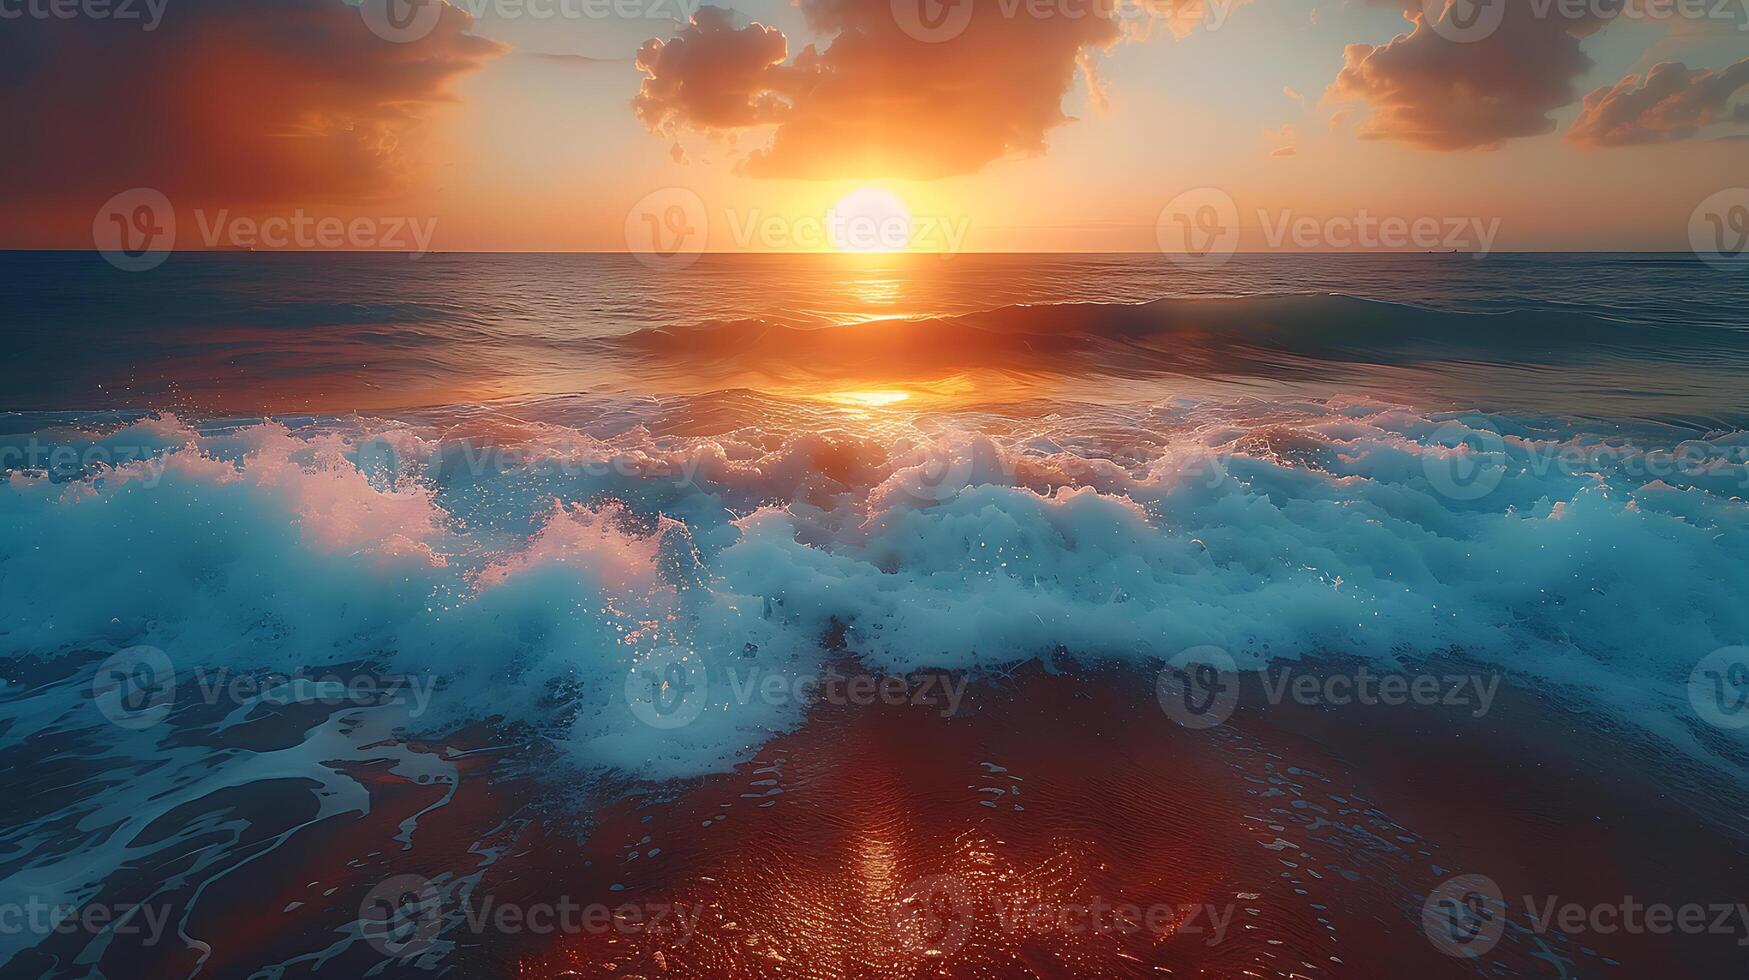 AI generated Beautiful nature sunset beach background photo